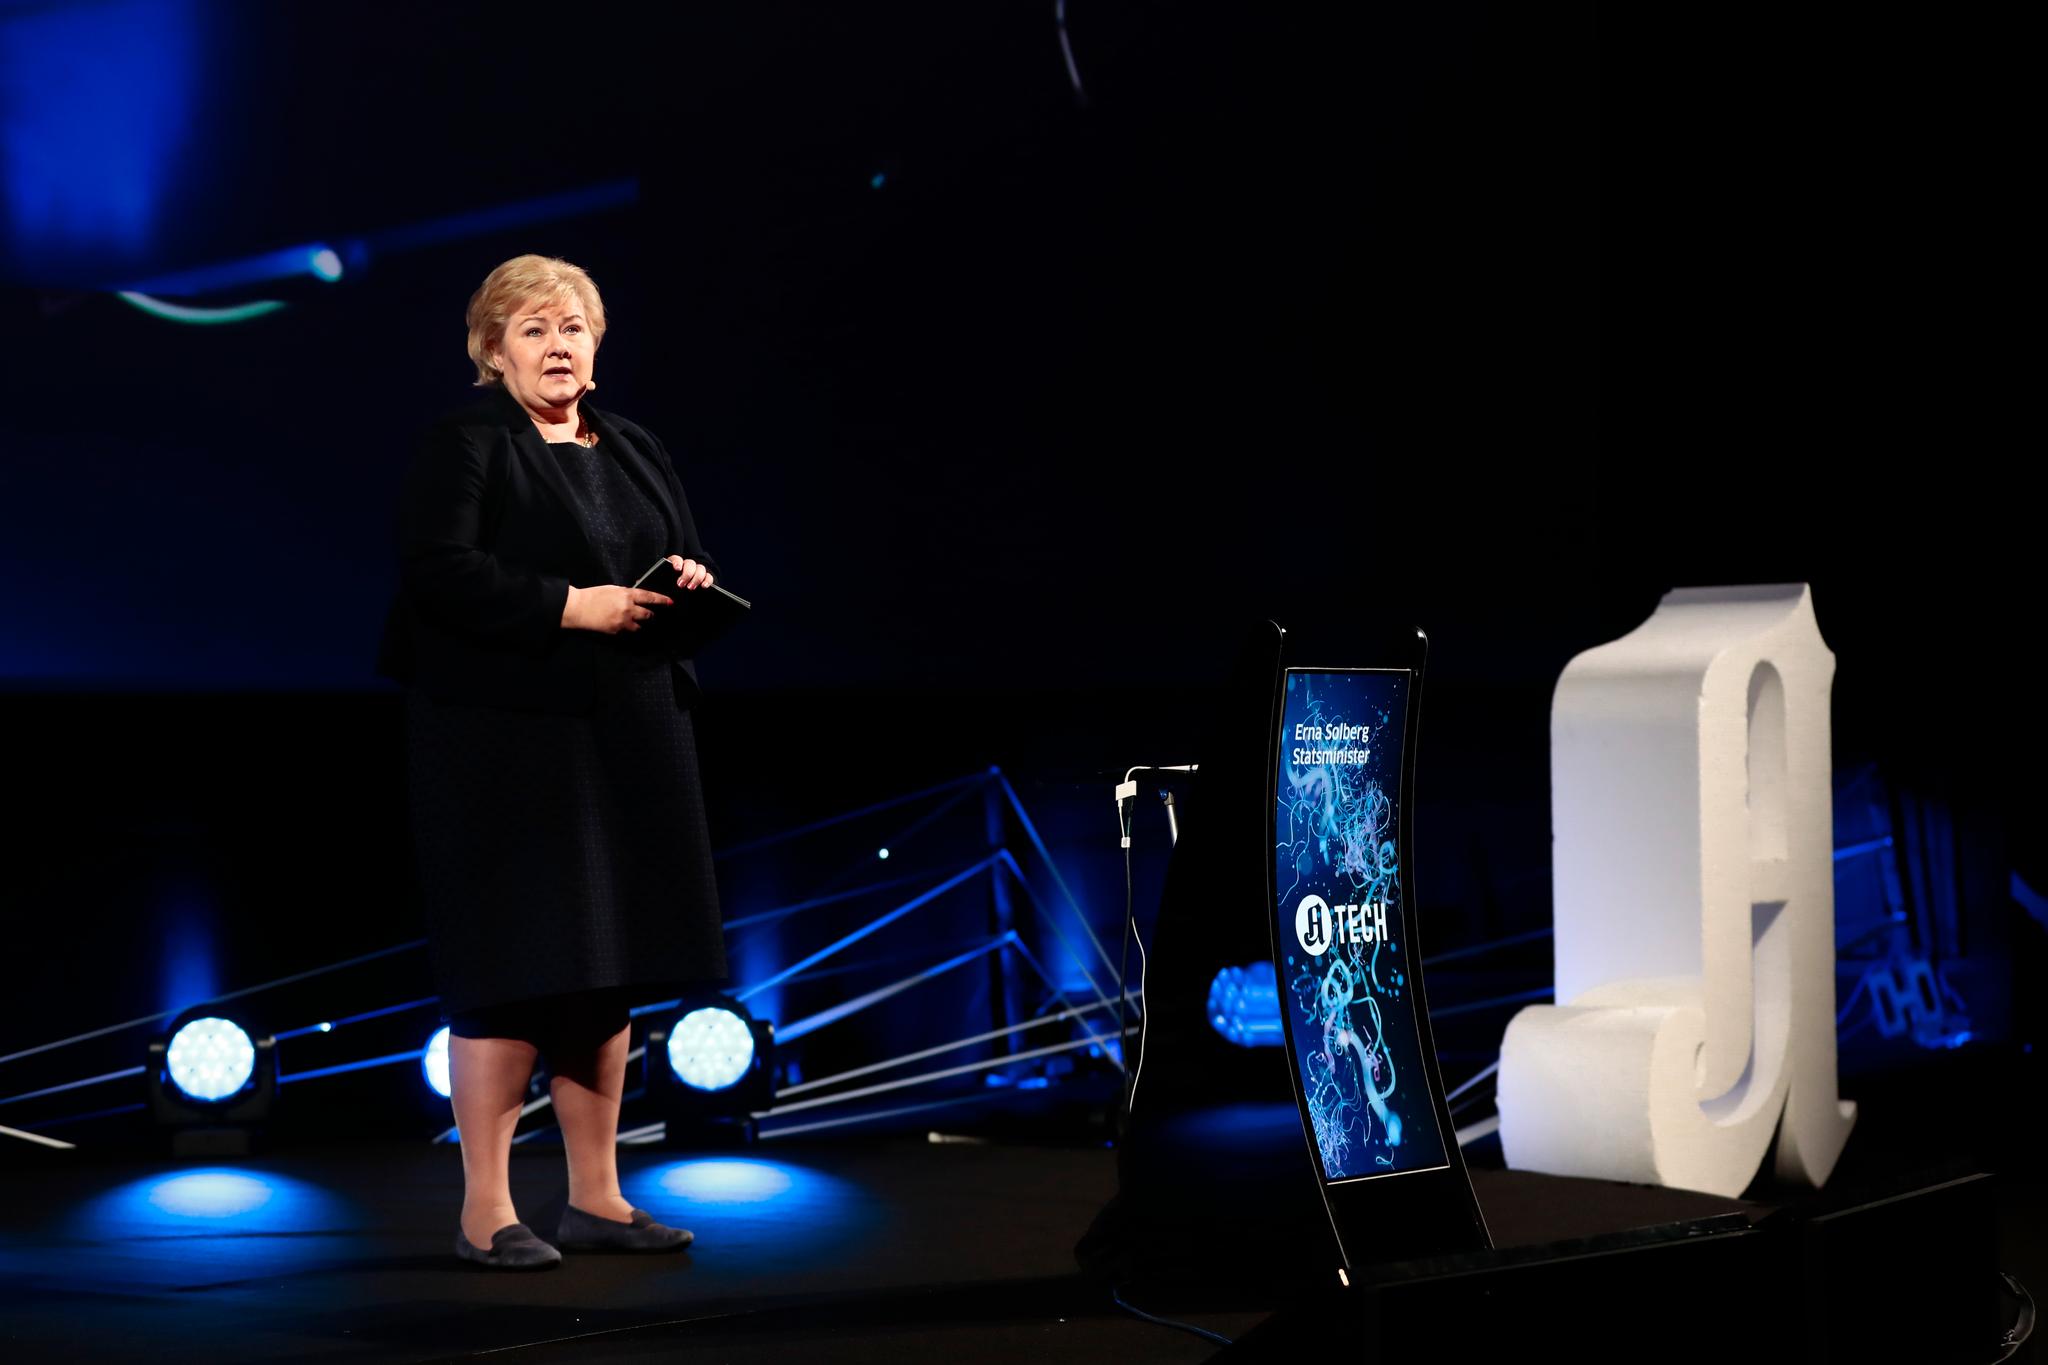 OM FREMTIDENS TEKNOLOGI: Statsminister Erna Solberg var første taler ut på teknologikonferansen A-tech 2018, som avholdes i Colosseum kino i Oslo onsdag.